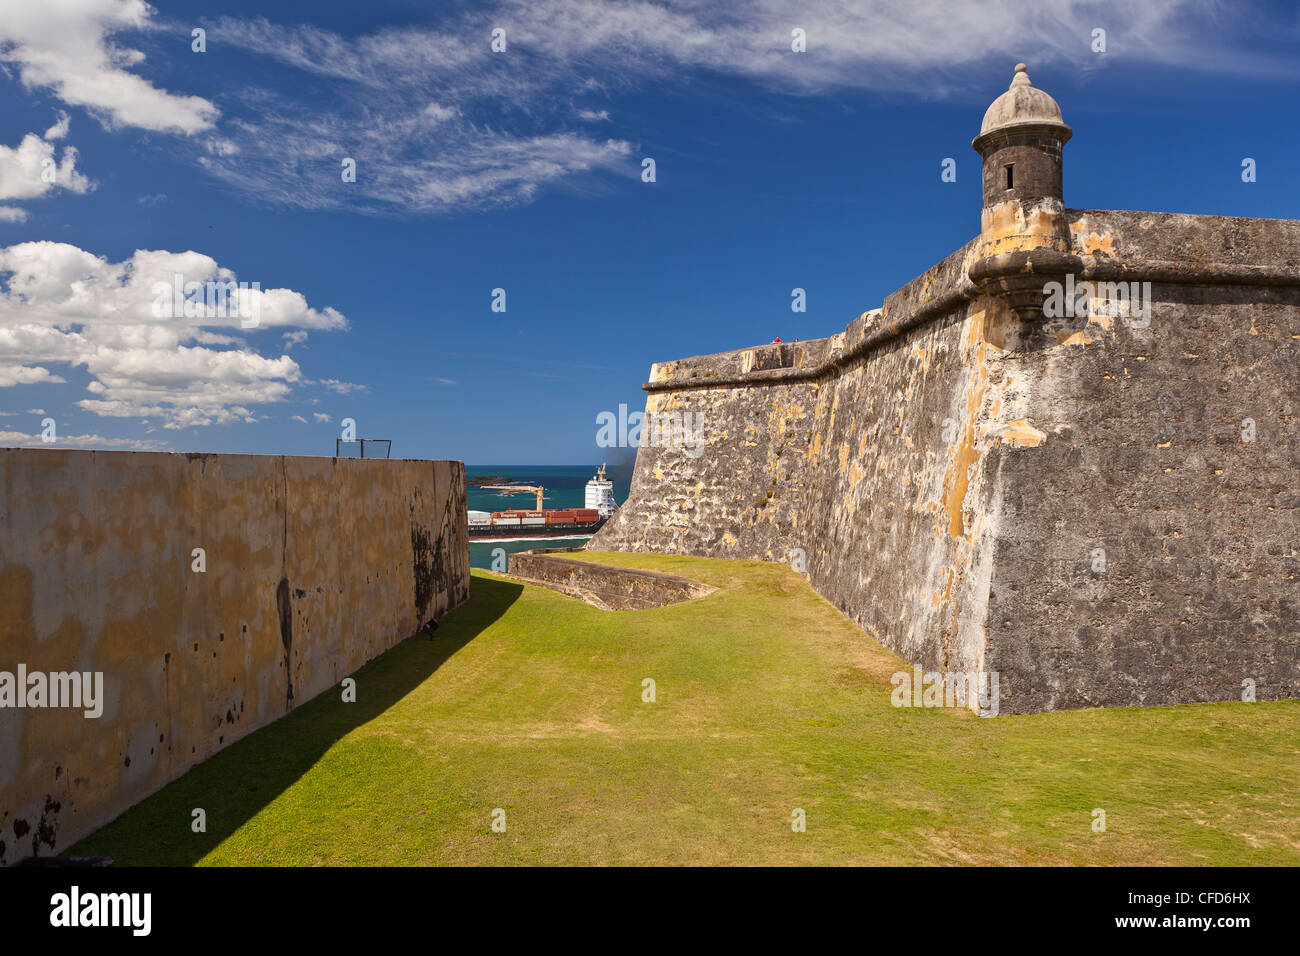 El VIEJO SAN JUAN, PUERTO RICO - El foso seco fuera del Castillo San Felipe del Morro, la fortaleza histórica. Foto de stock